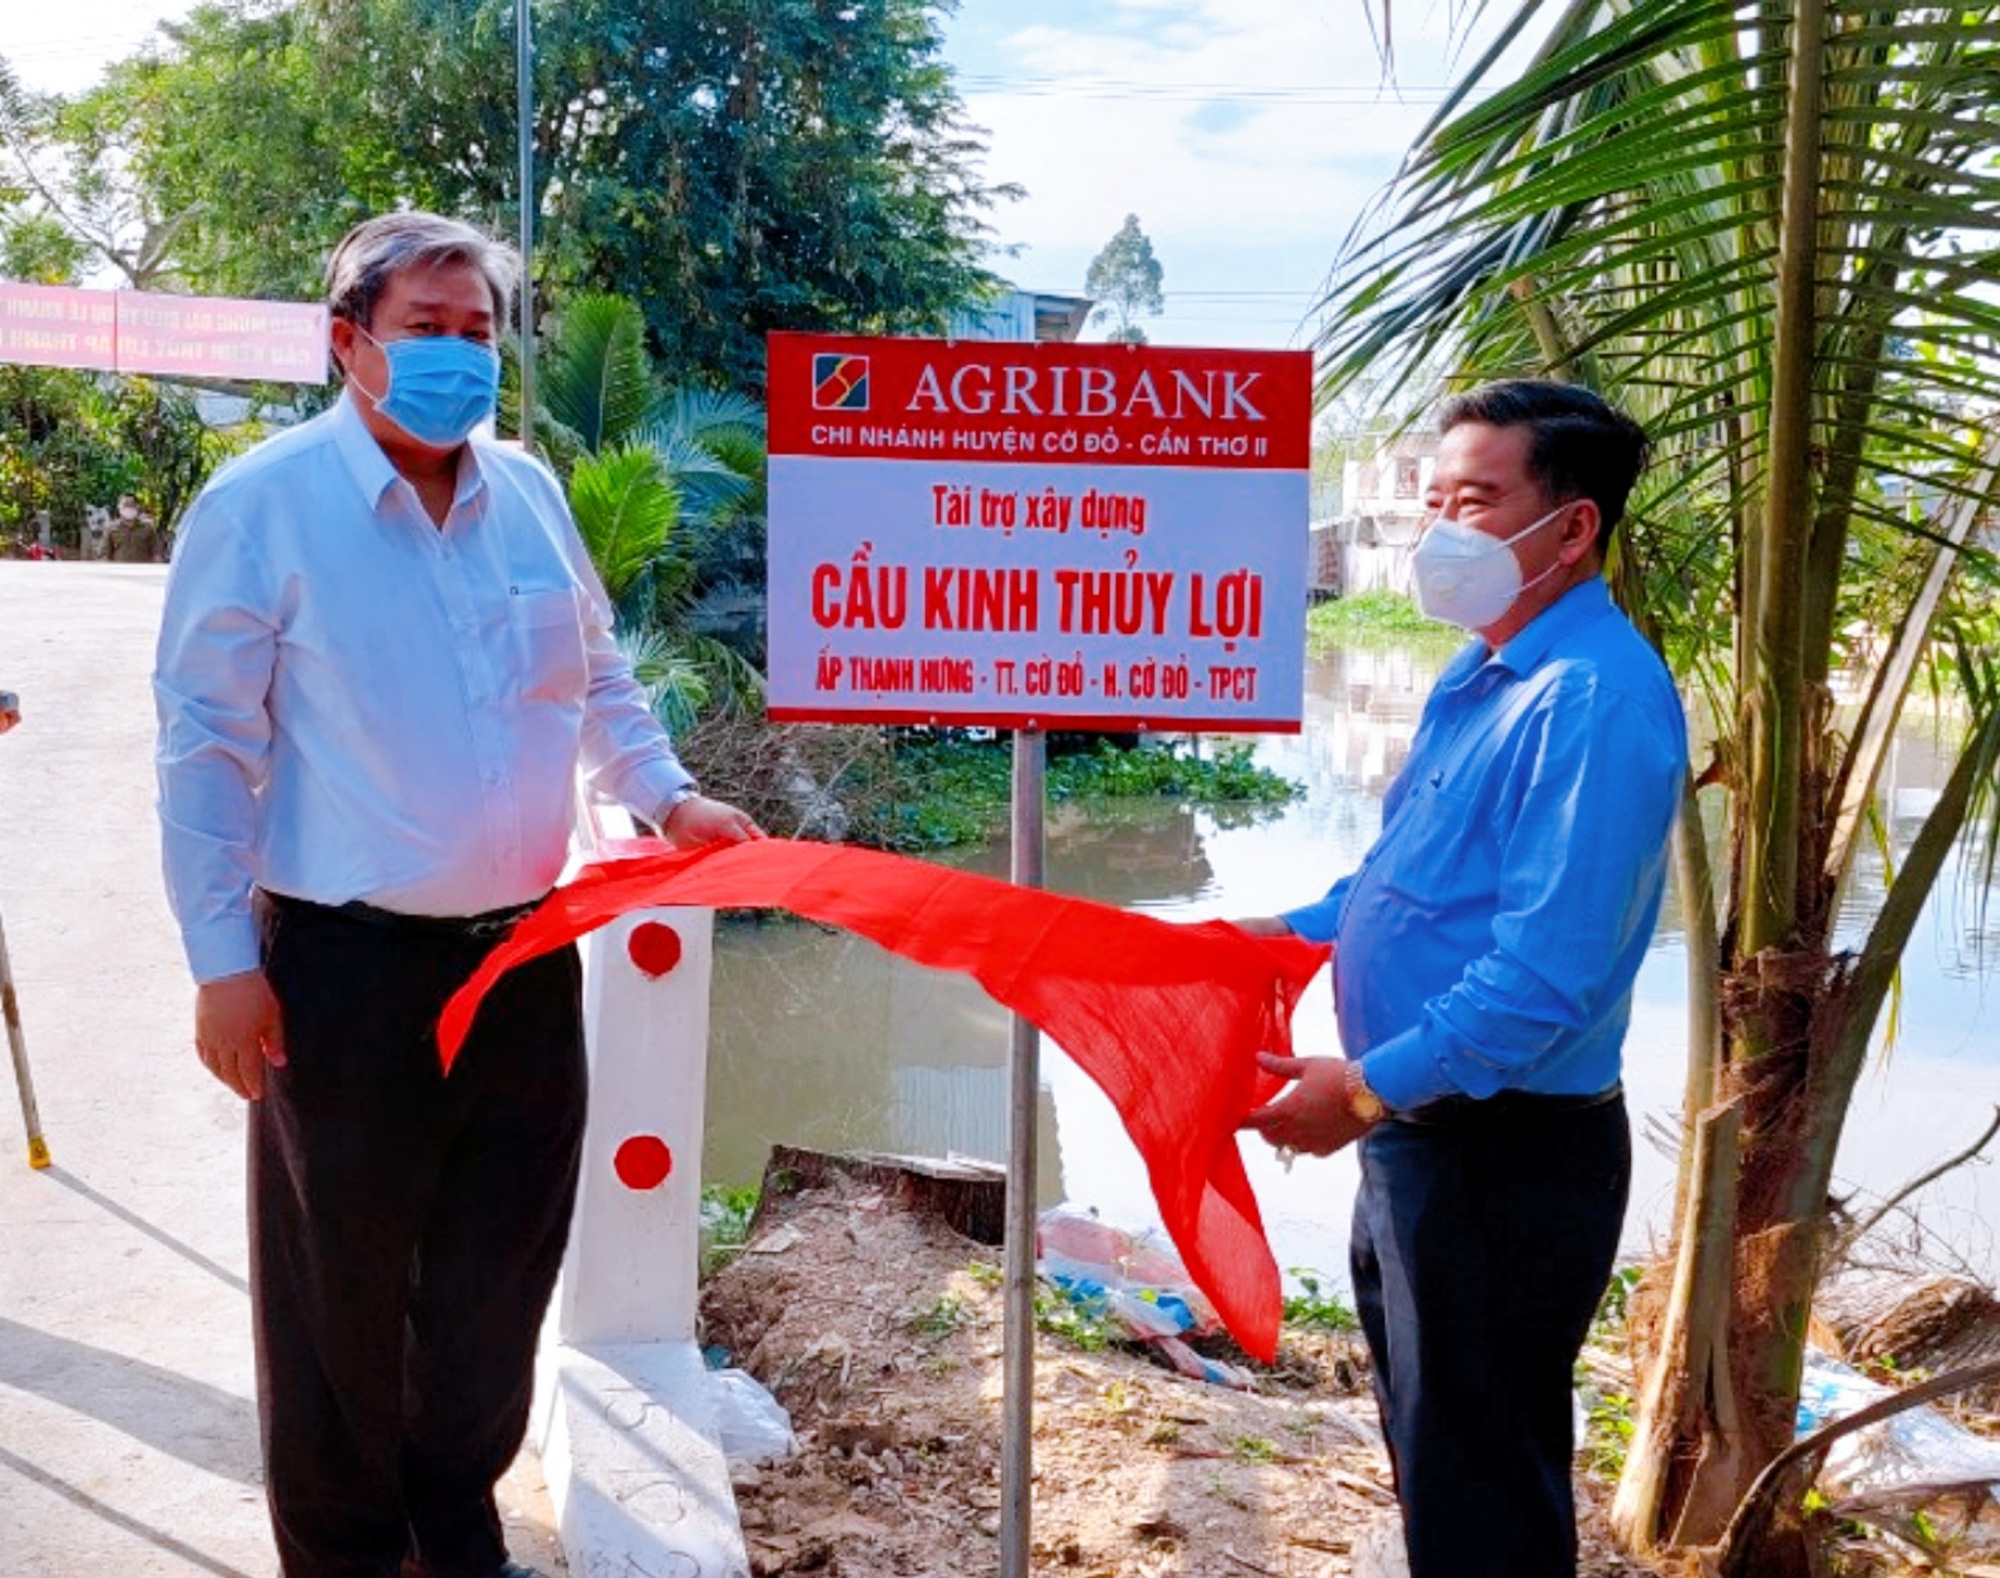 Agribank Chi nhánh Cần Thơ II tài trợ xây dựng cầu Kênh thuỷ lợi tại Cần Thơ - Ảnh 1.